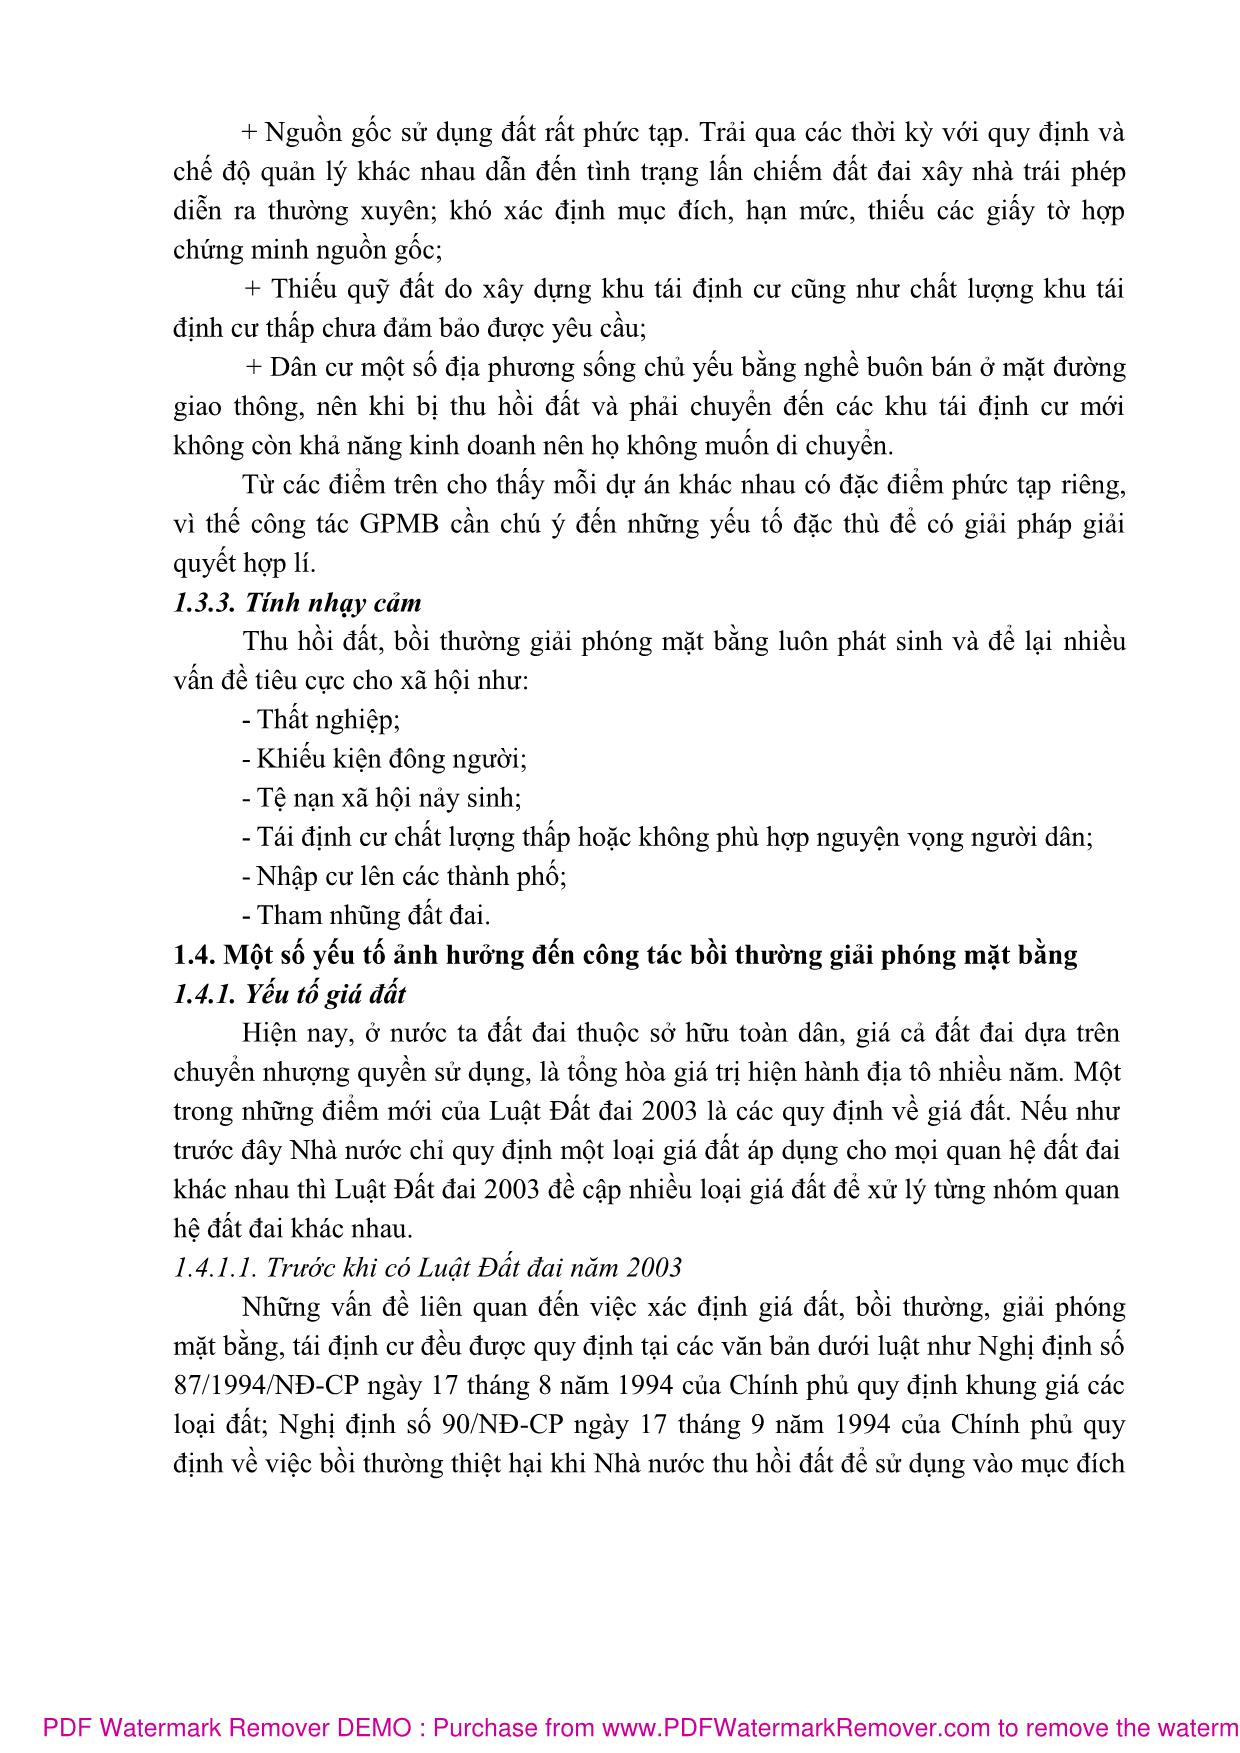 Bài giảng Bồi thường giải phóng mặt bằng (Phần 1) - Nguyễn Thị Nhật Linh trang 10